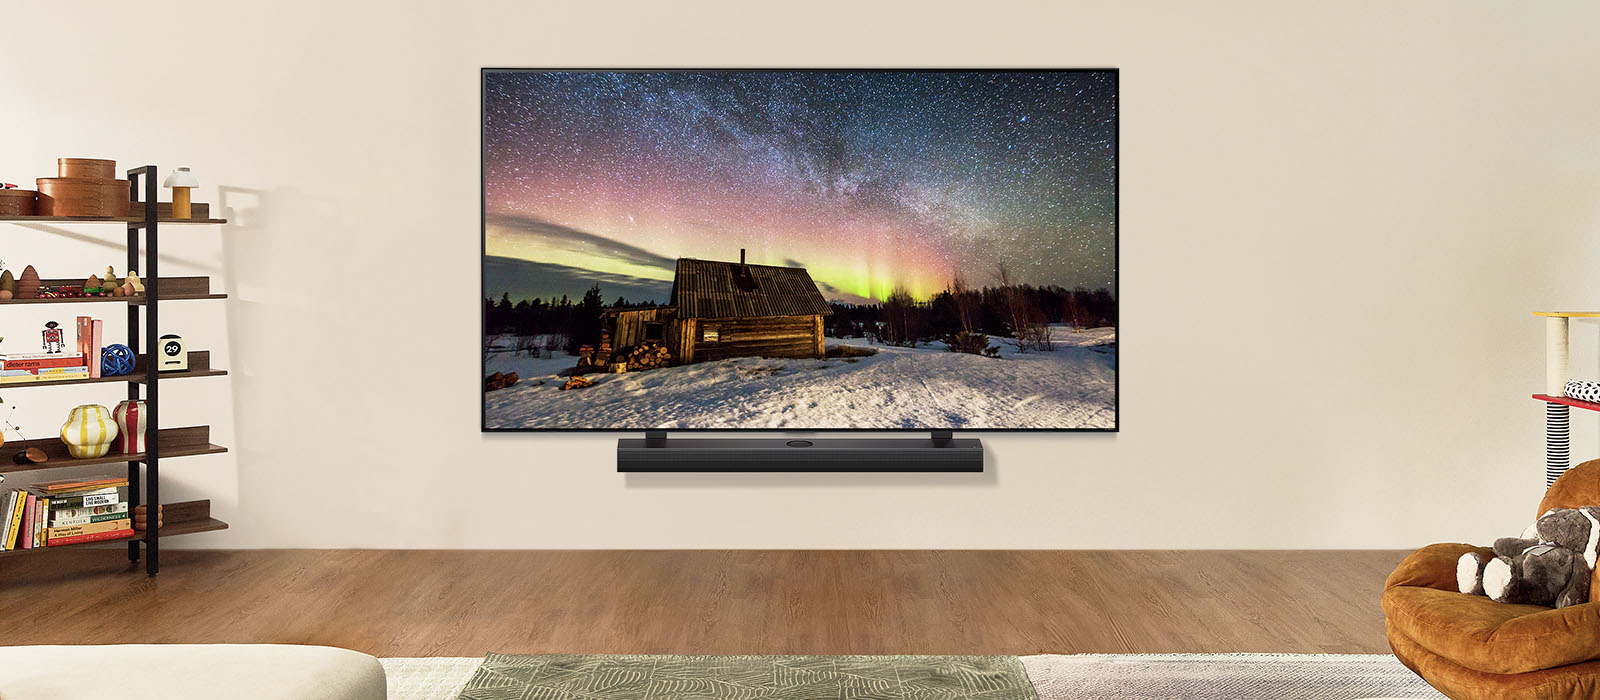 LG TV và LG Loa thanh trong không gian sống hiện đại vào ban ngày. Hình ảnh màn hình cực quang được hiển thị với mức độ sáng lý tưởng.